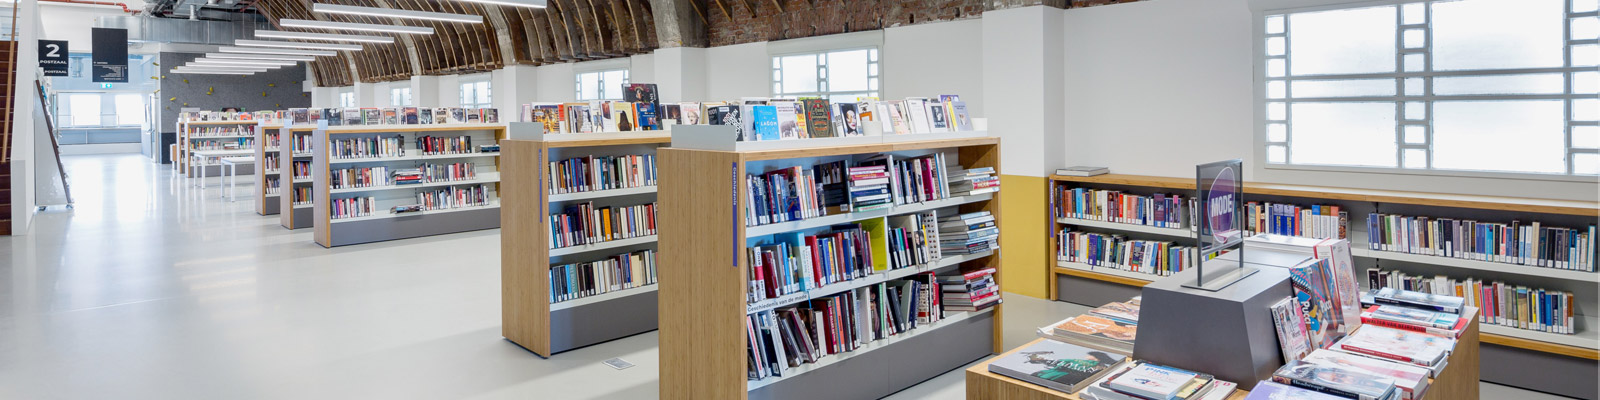 Zentralbibliothek Neude, Utrecht